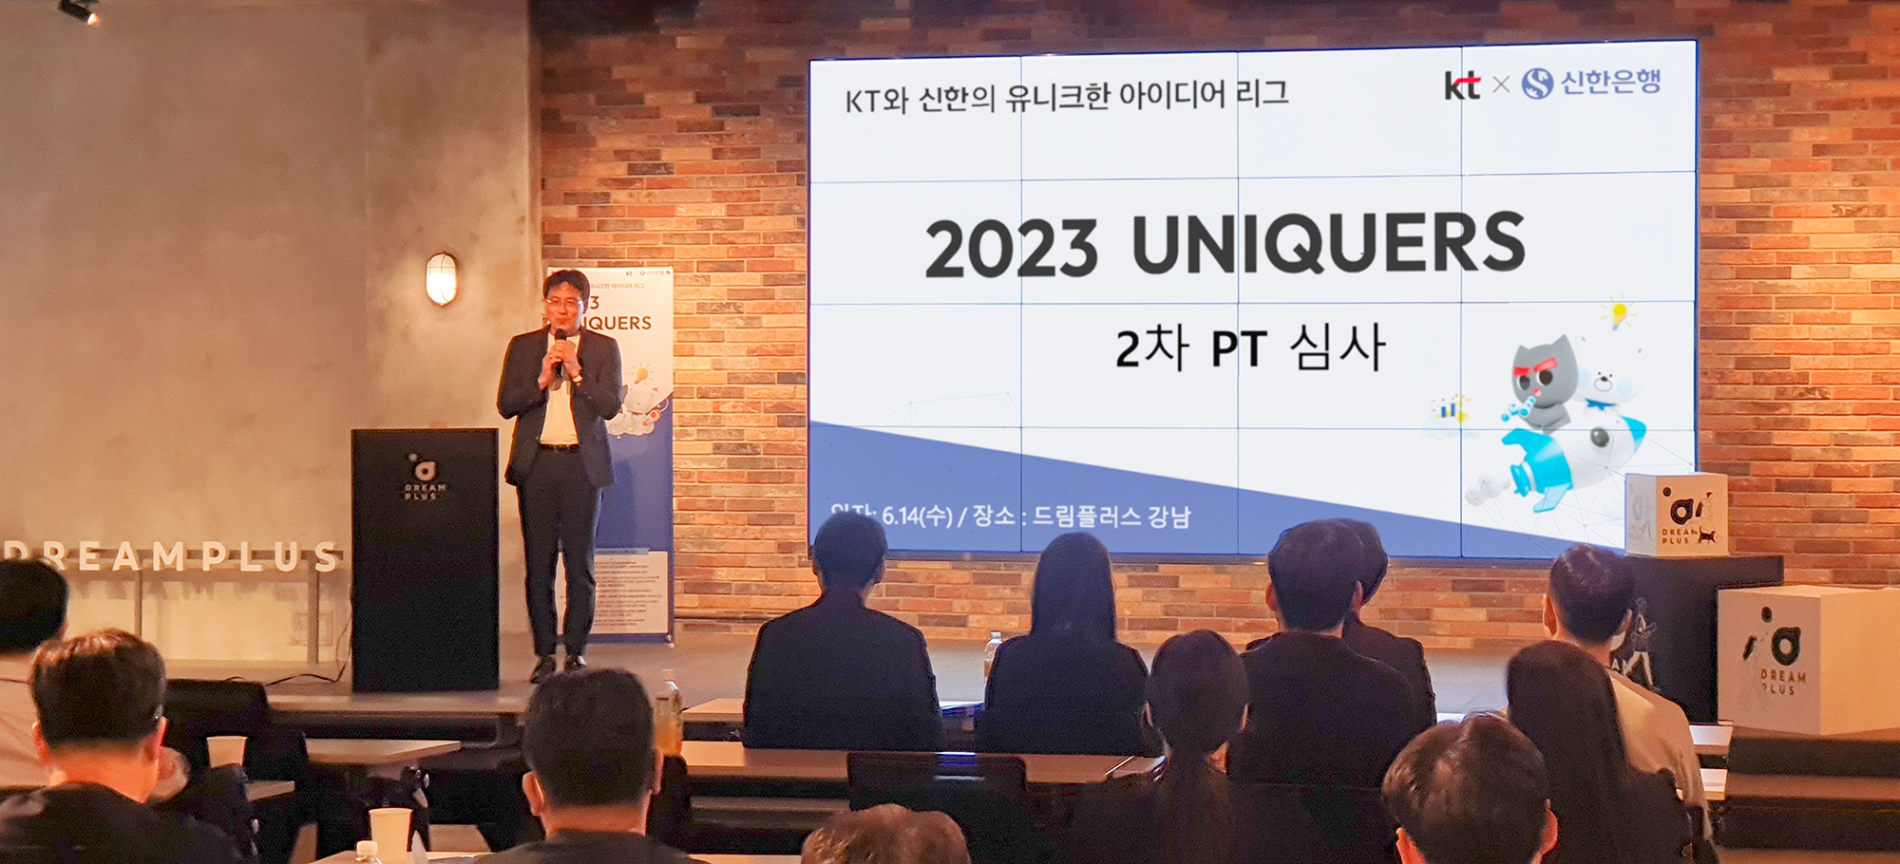 홍해천 KT 융합기술원 기술경영담당 상무가 ‘2023 UNIQUERS’ 공모전의 2차 PT 심사에서 참가자들에게 인사말을 하고 있다. 사진 제공=KT